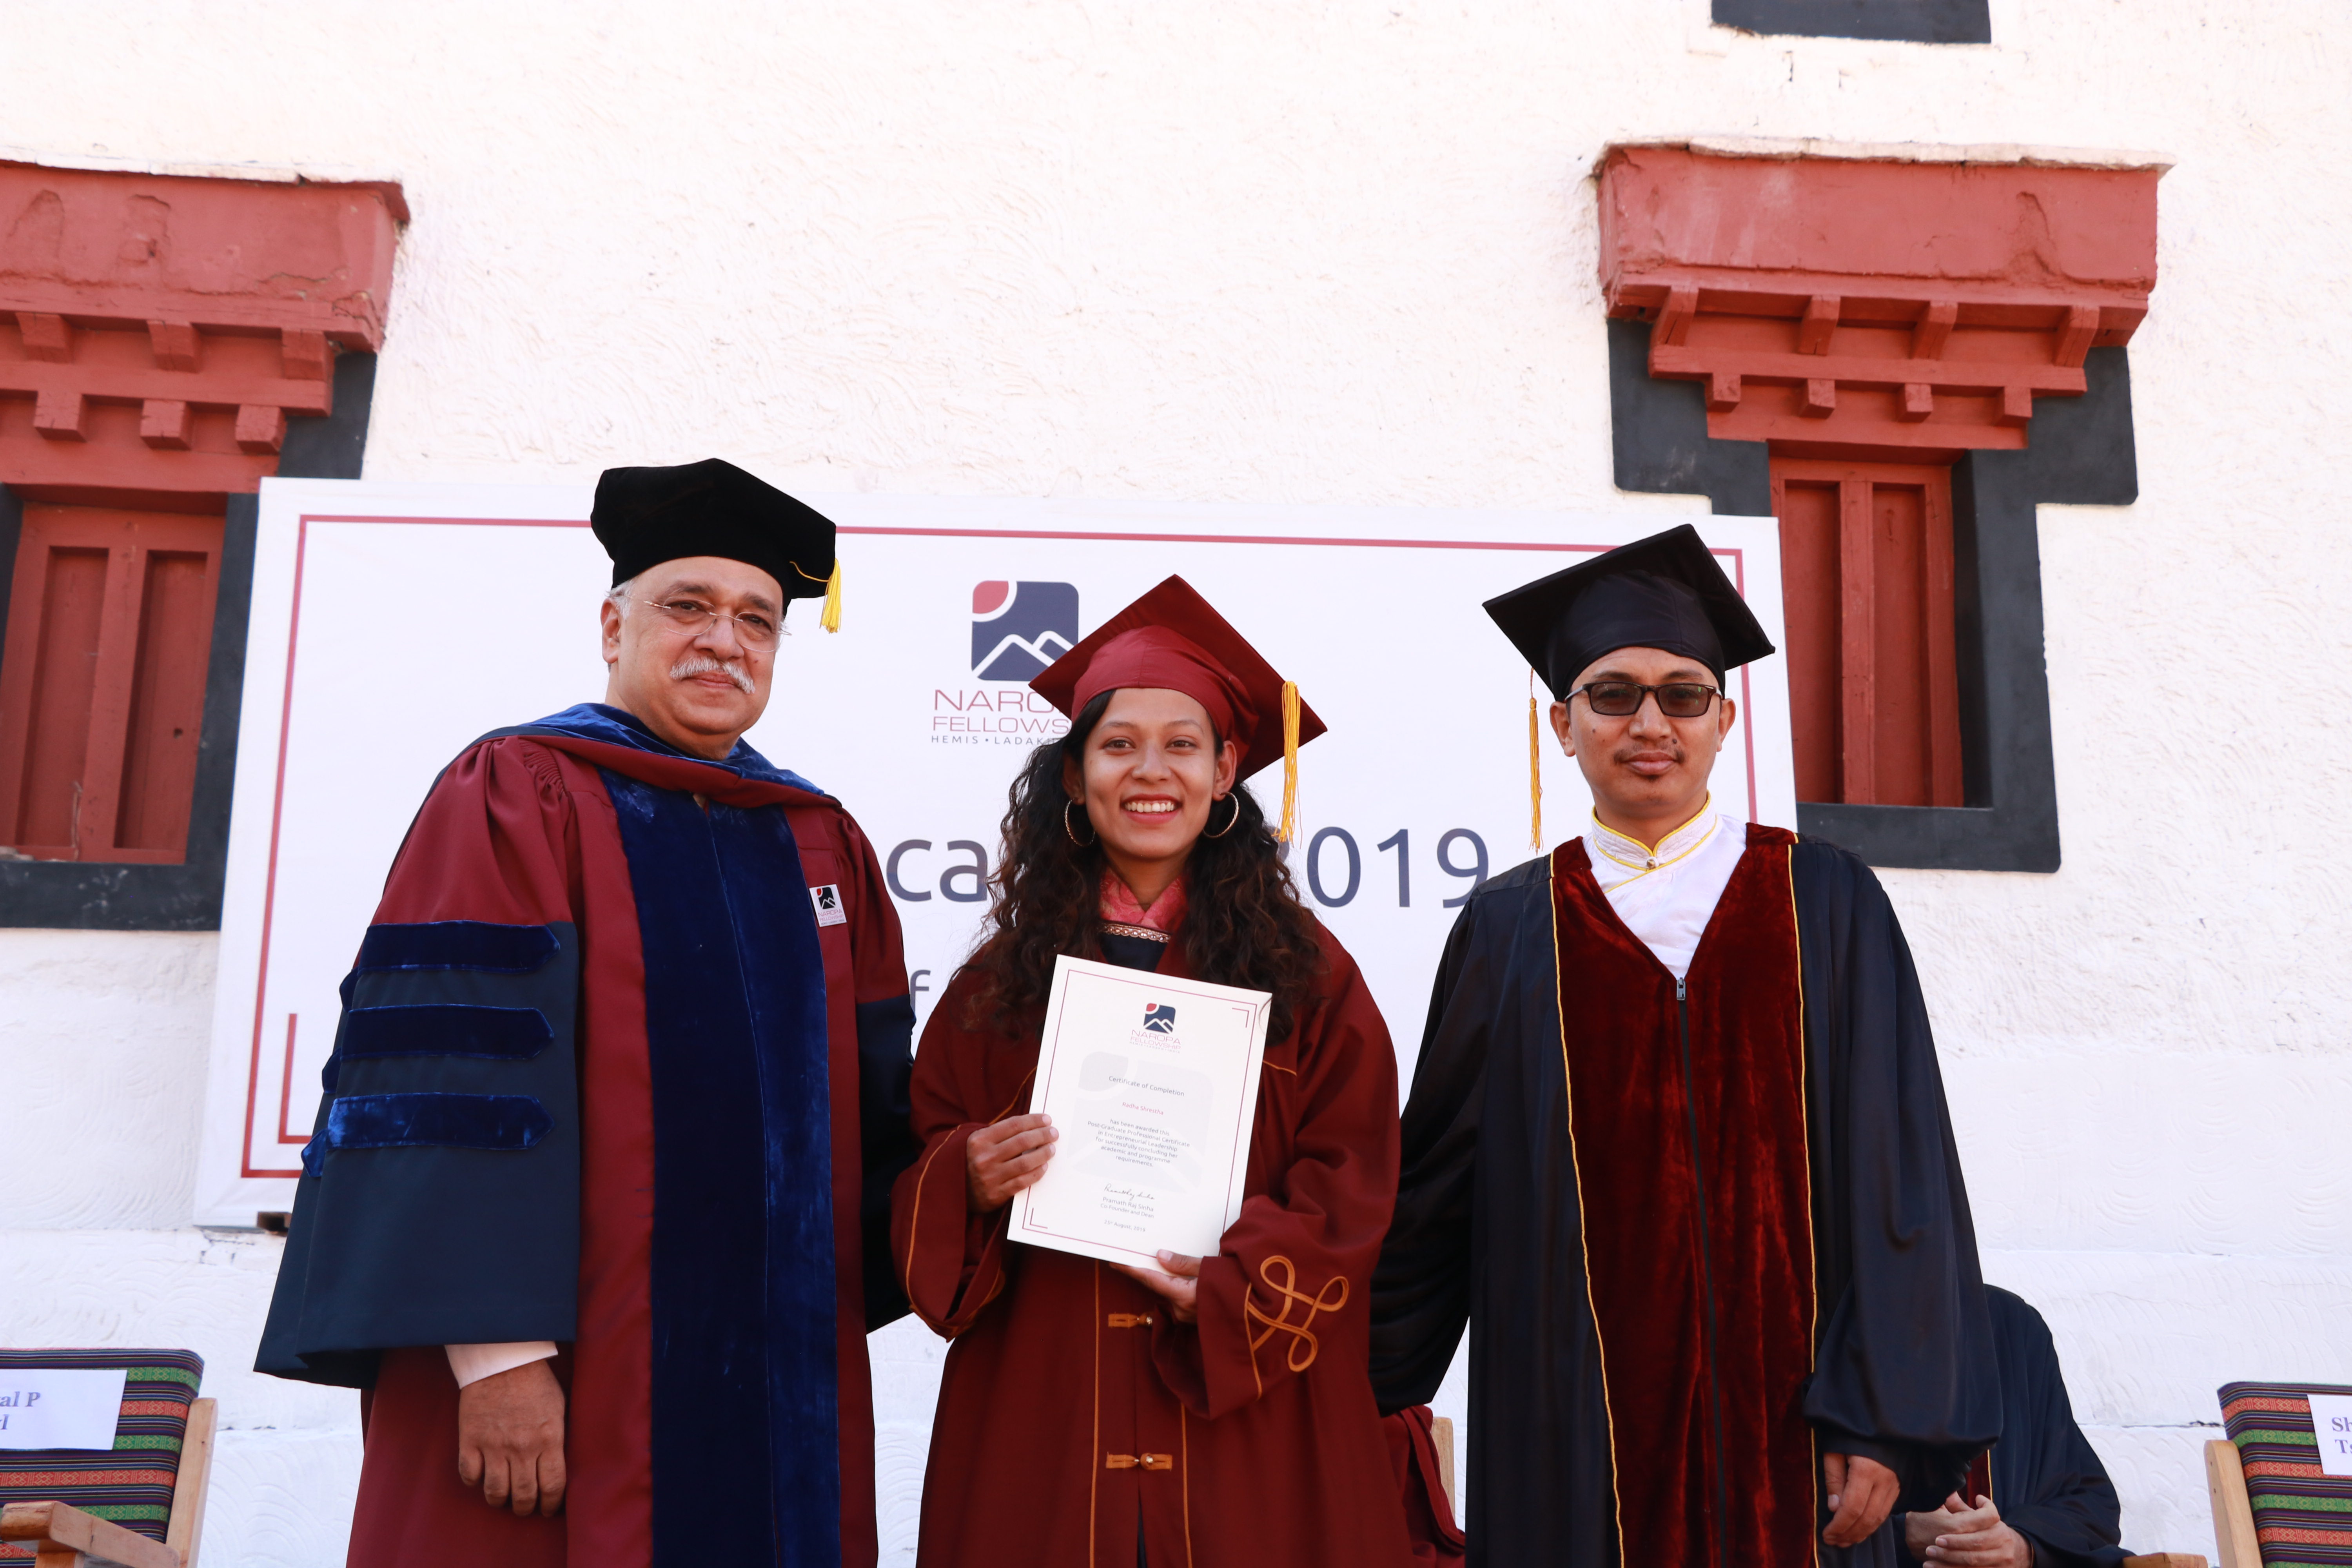 Naropa Fellowship postgraduate certificates given by Dr. Pramath Raj Sinha and MP of Ladakh Shri Jamyang Tsering Namgyal